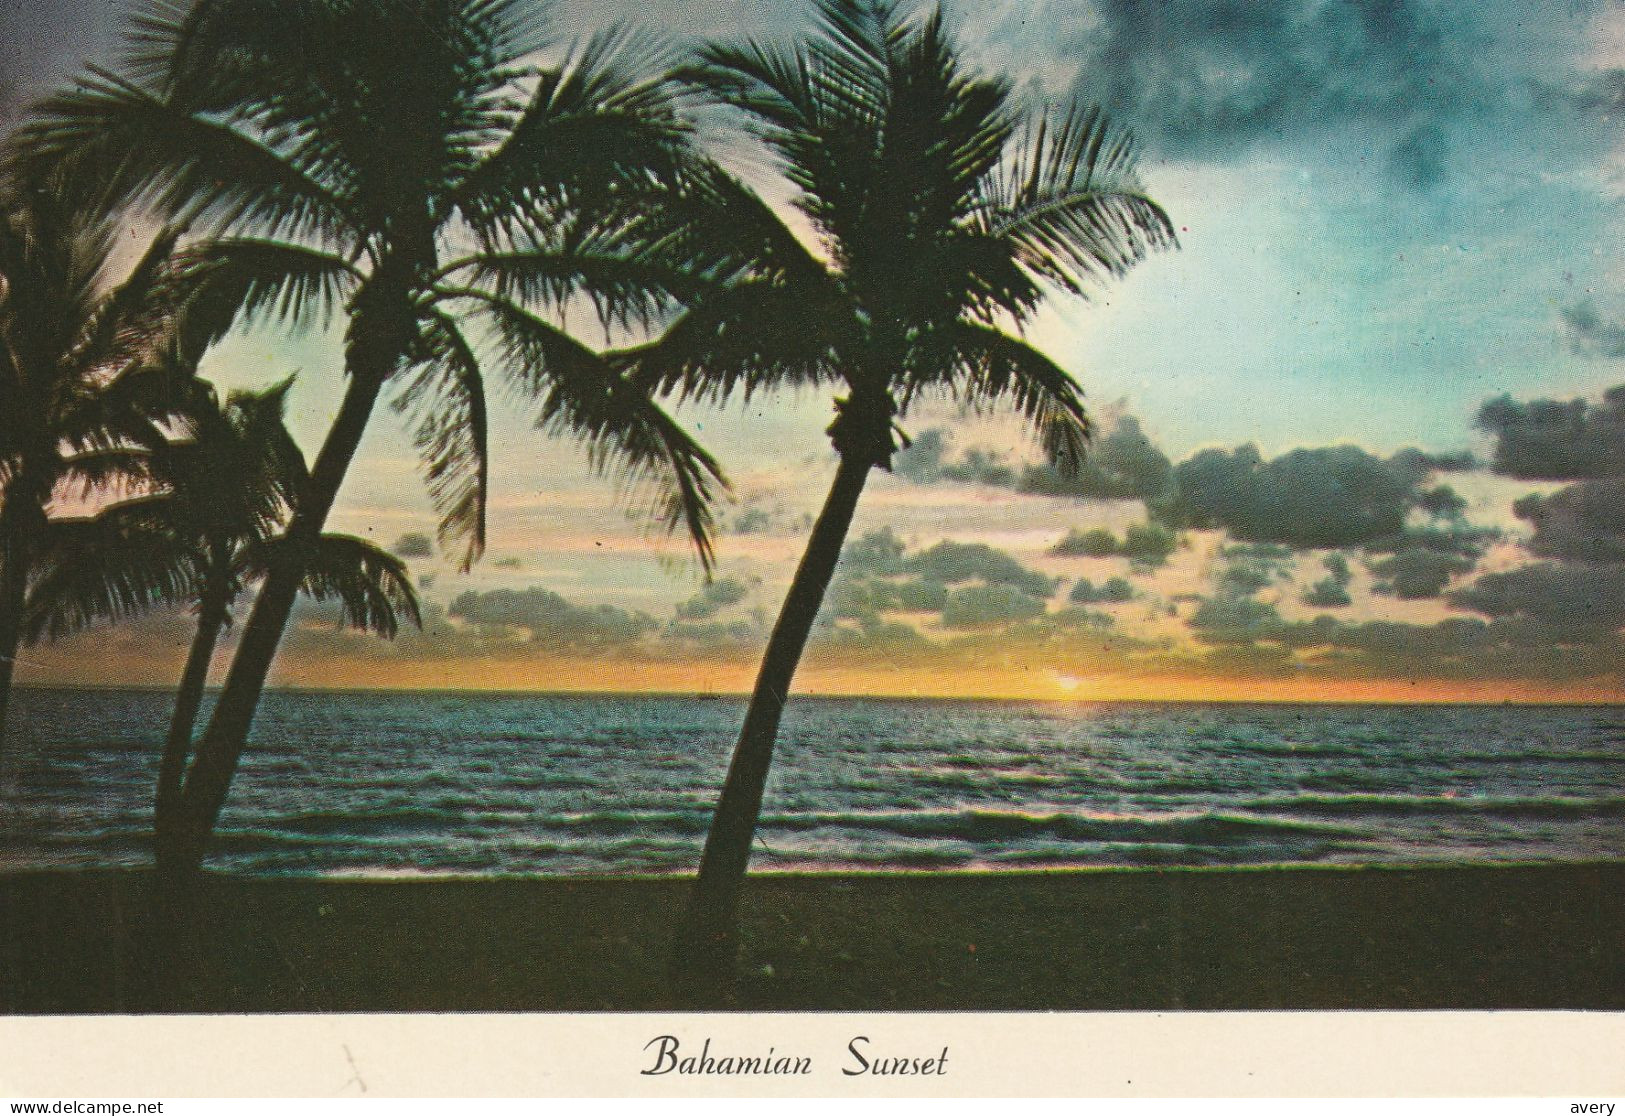 Bahamian Sunset, Bahamas - Bahamas